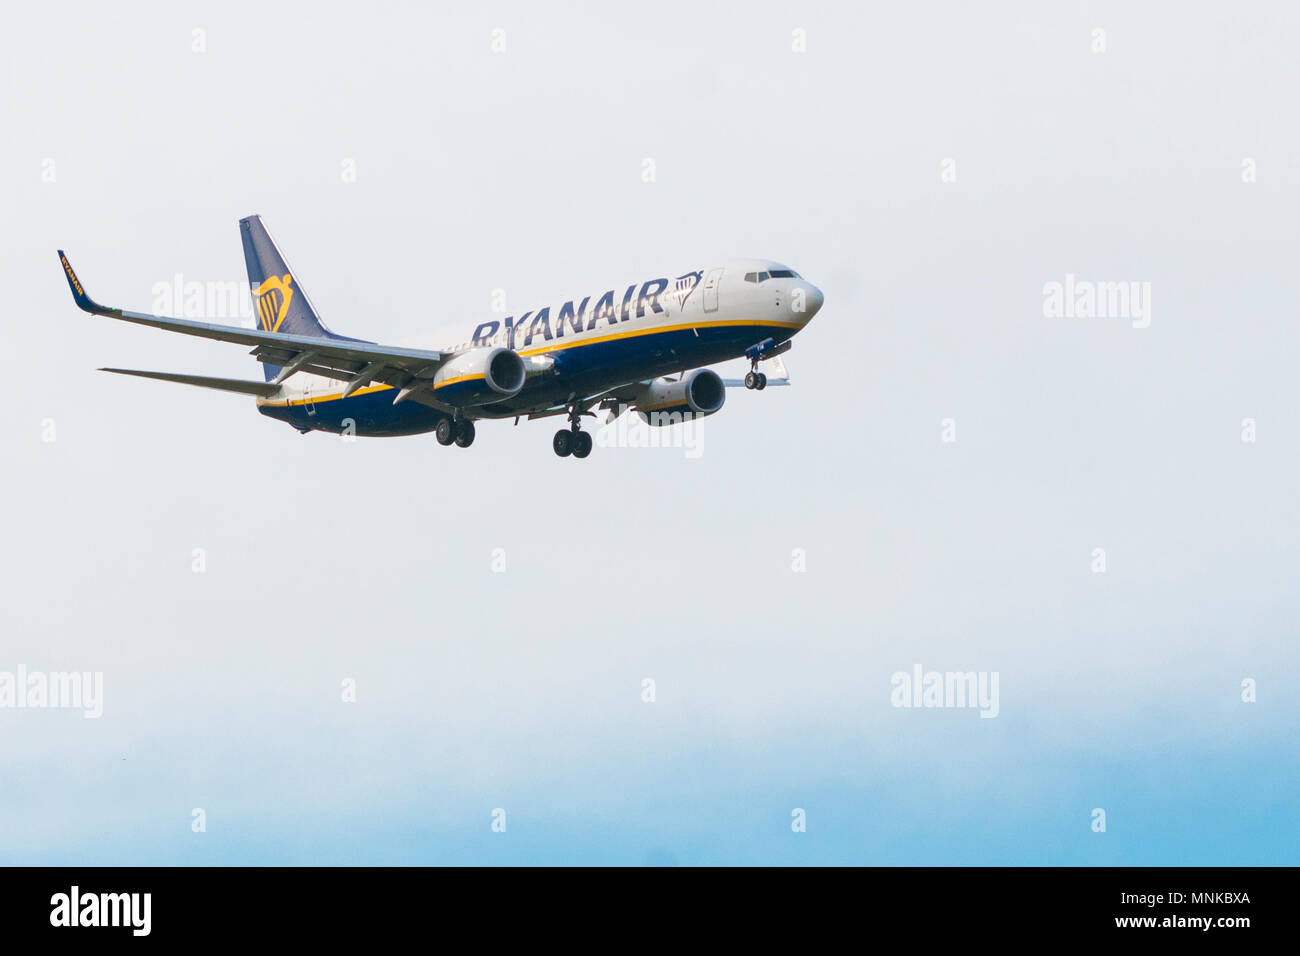 Pise, Italie - 15 janvier 2017 - Un Boeing 737-600 de Ryanair atterrit à l'aéroport de Pise (Galileo Galilei) Banque D'Images